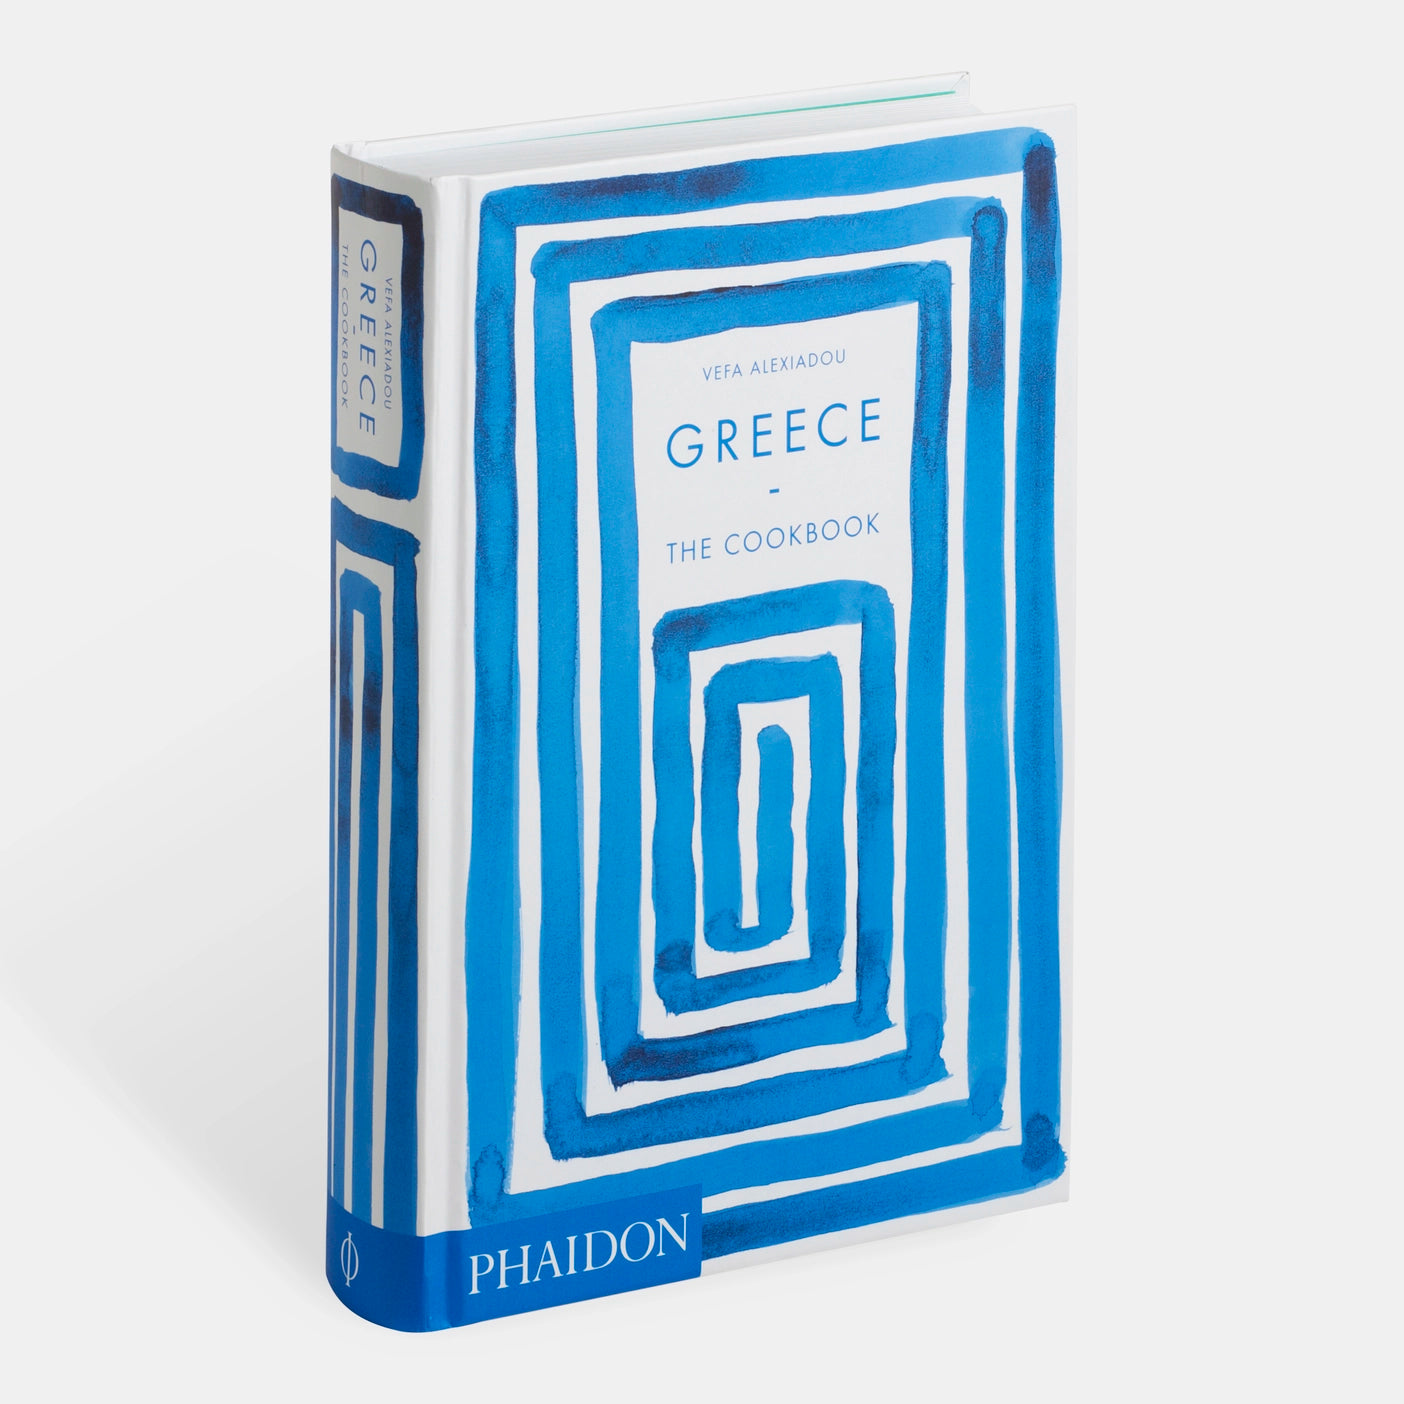 Greece: The Cookbook
Vefa Alexiadou